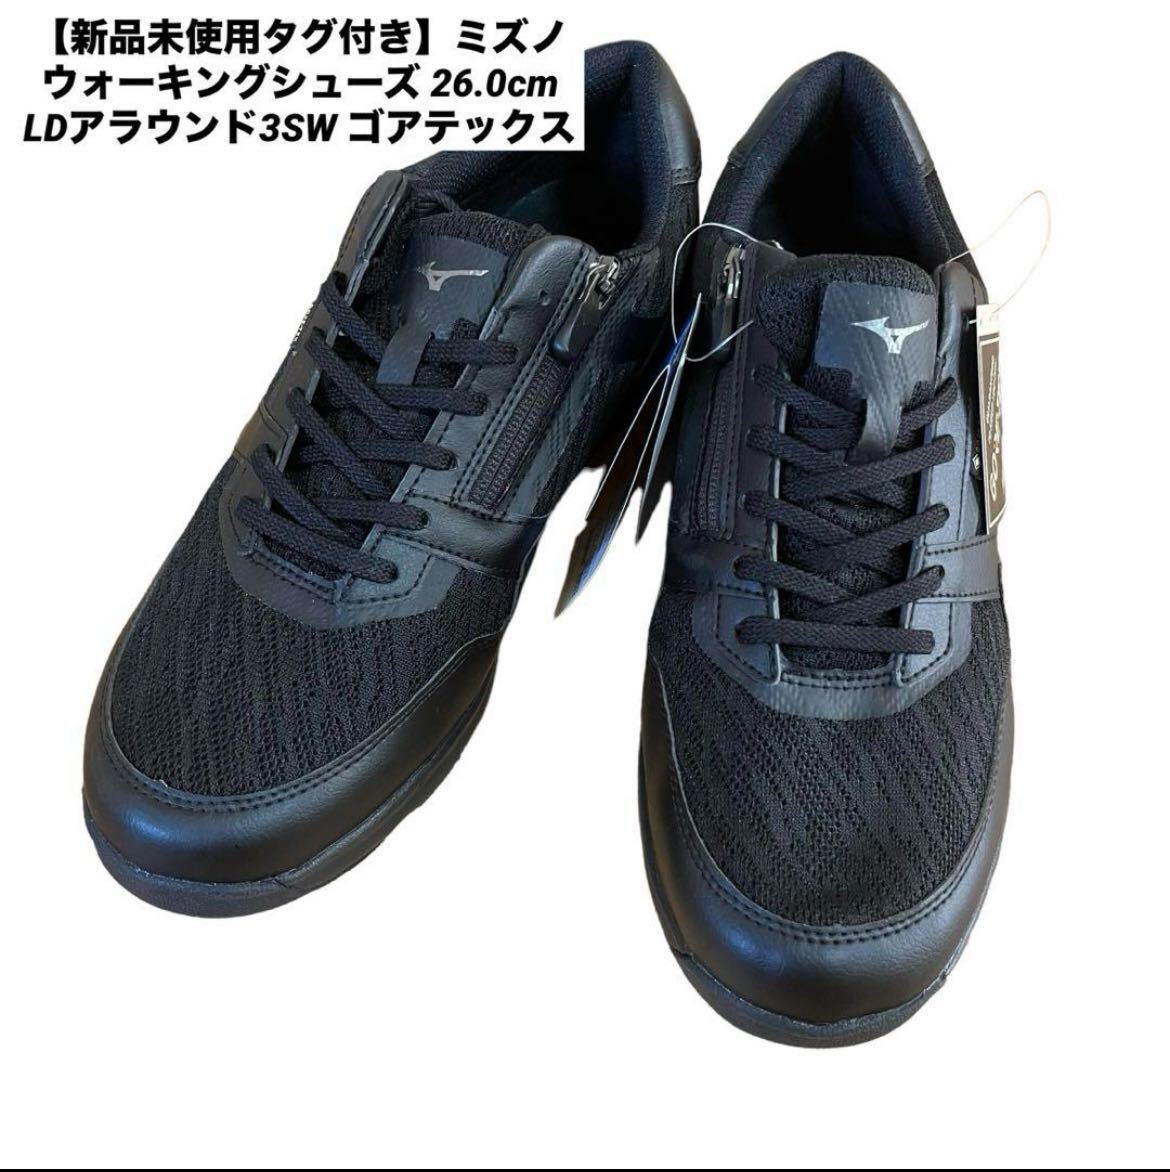 [1 jpy exhibition ] 1 start Mizuno walking shoes Gore-Tex waterproof waterproof comfort shoes gentleman men's sneakers 4E business new goods 